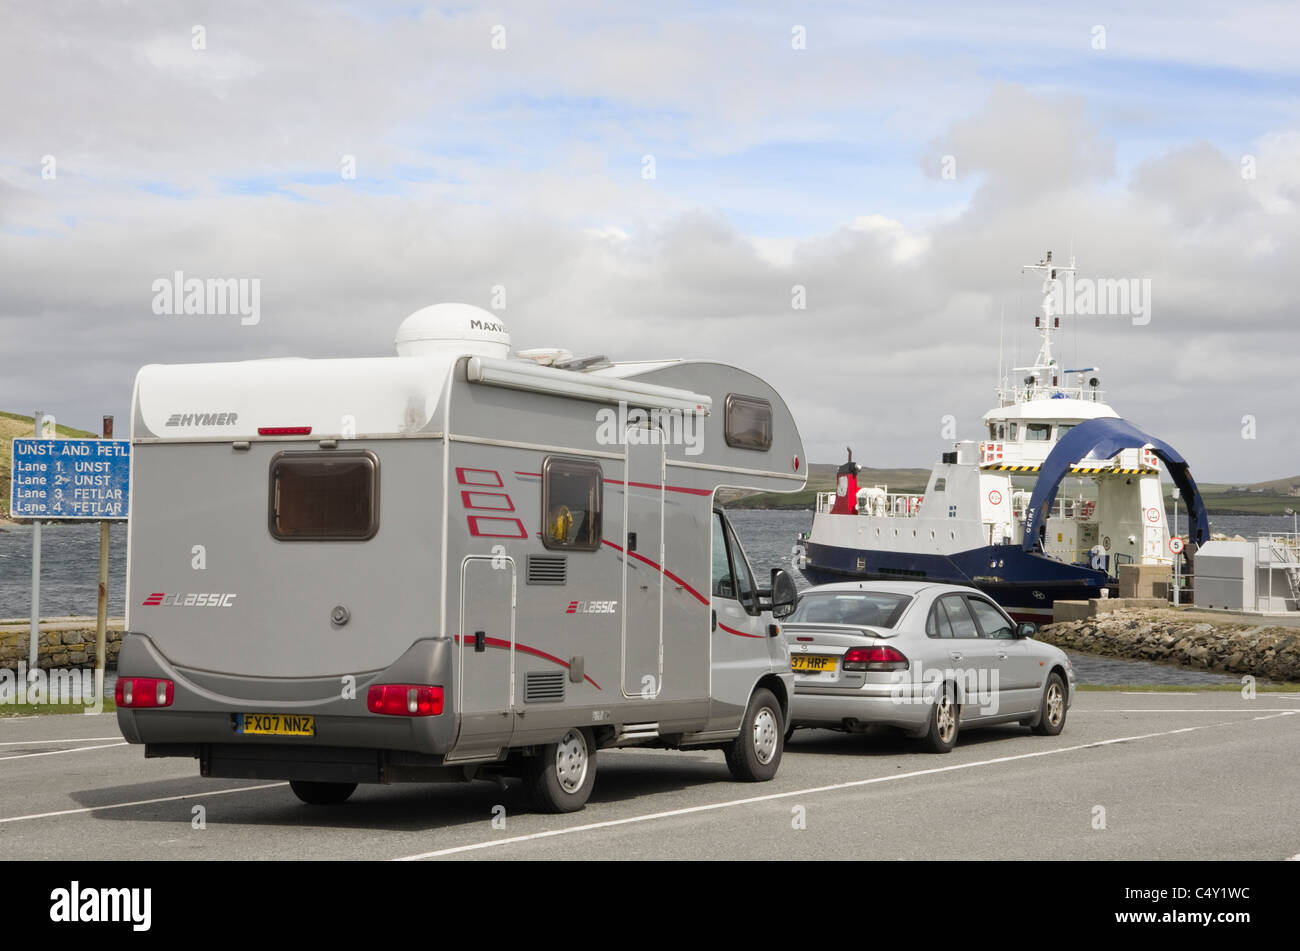 Gare de ferry avec files d'attente pour voitures et camping-cars pour Unst à travers Bluemull Sound. Gutcher, Yell, Shetland Islands, Écosse, Royaume-Uni Banque D'Images